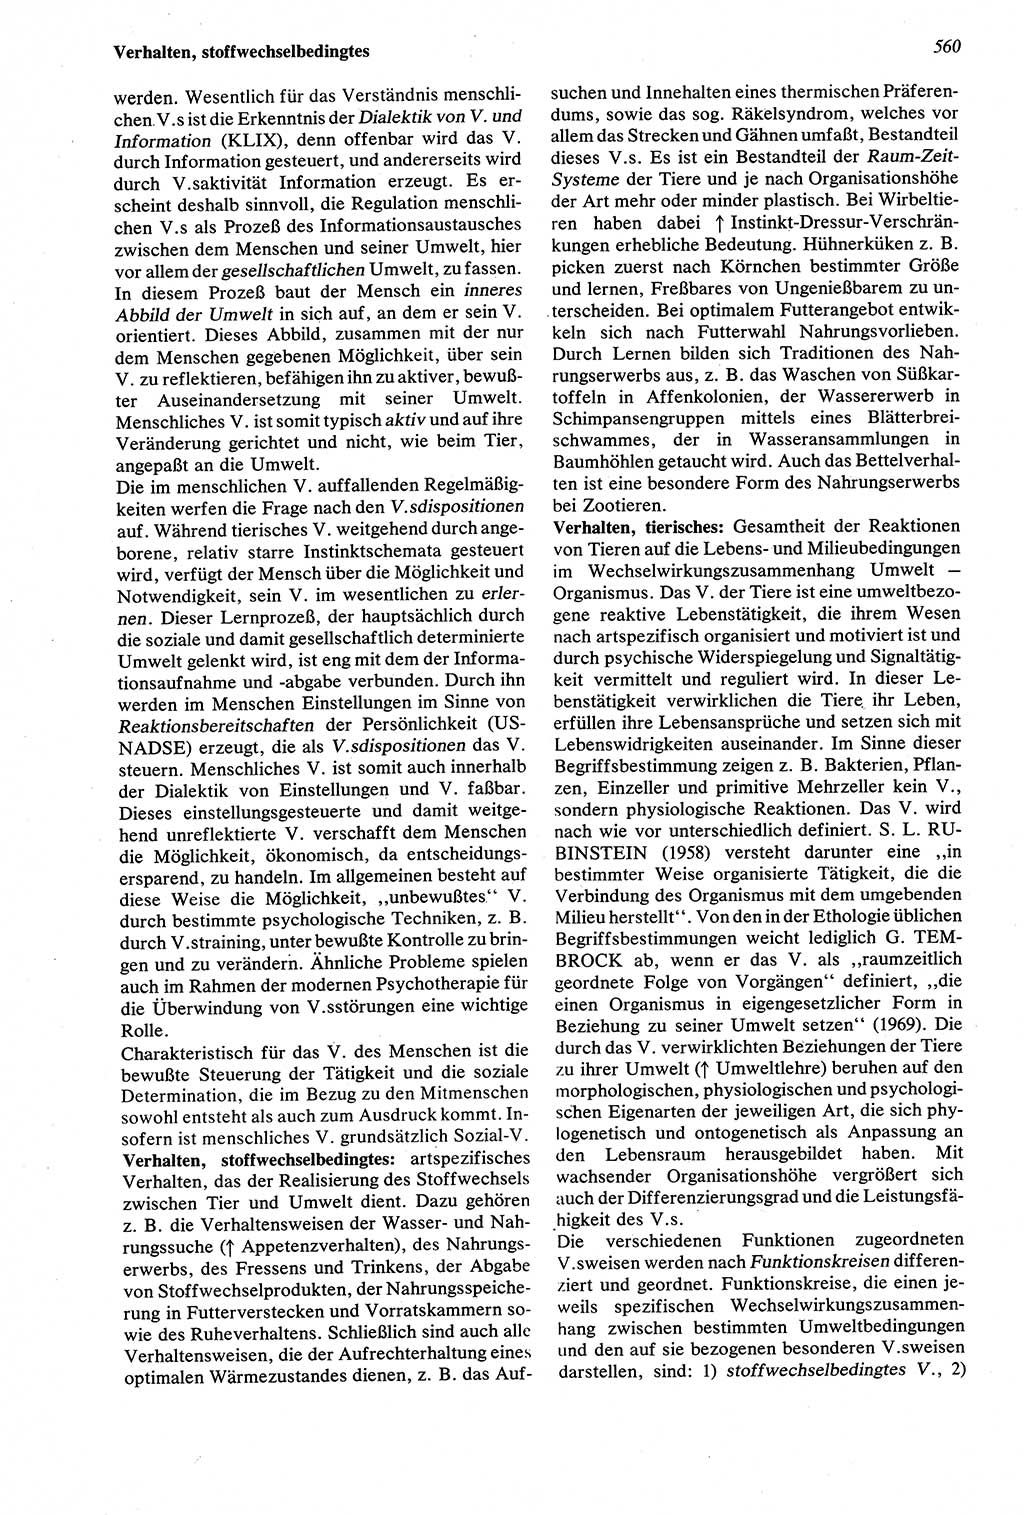 Wörterbuch der Psychologie [Deutsche Demokratische Republik (DDR)] 1976, Seite 560 (Wb. Psych. DDR 1976, S. 560)